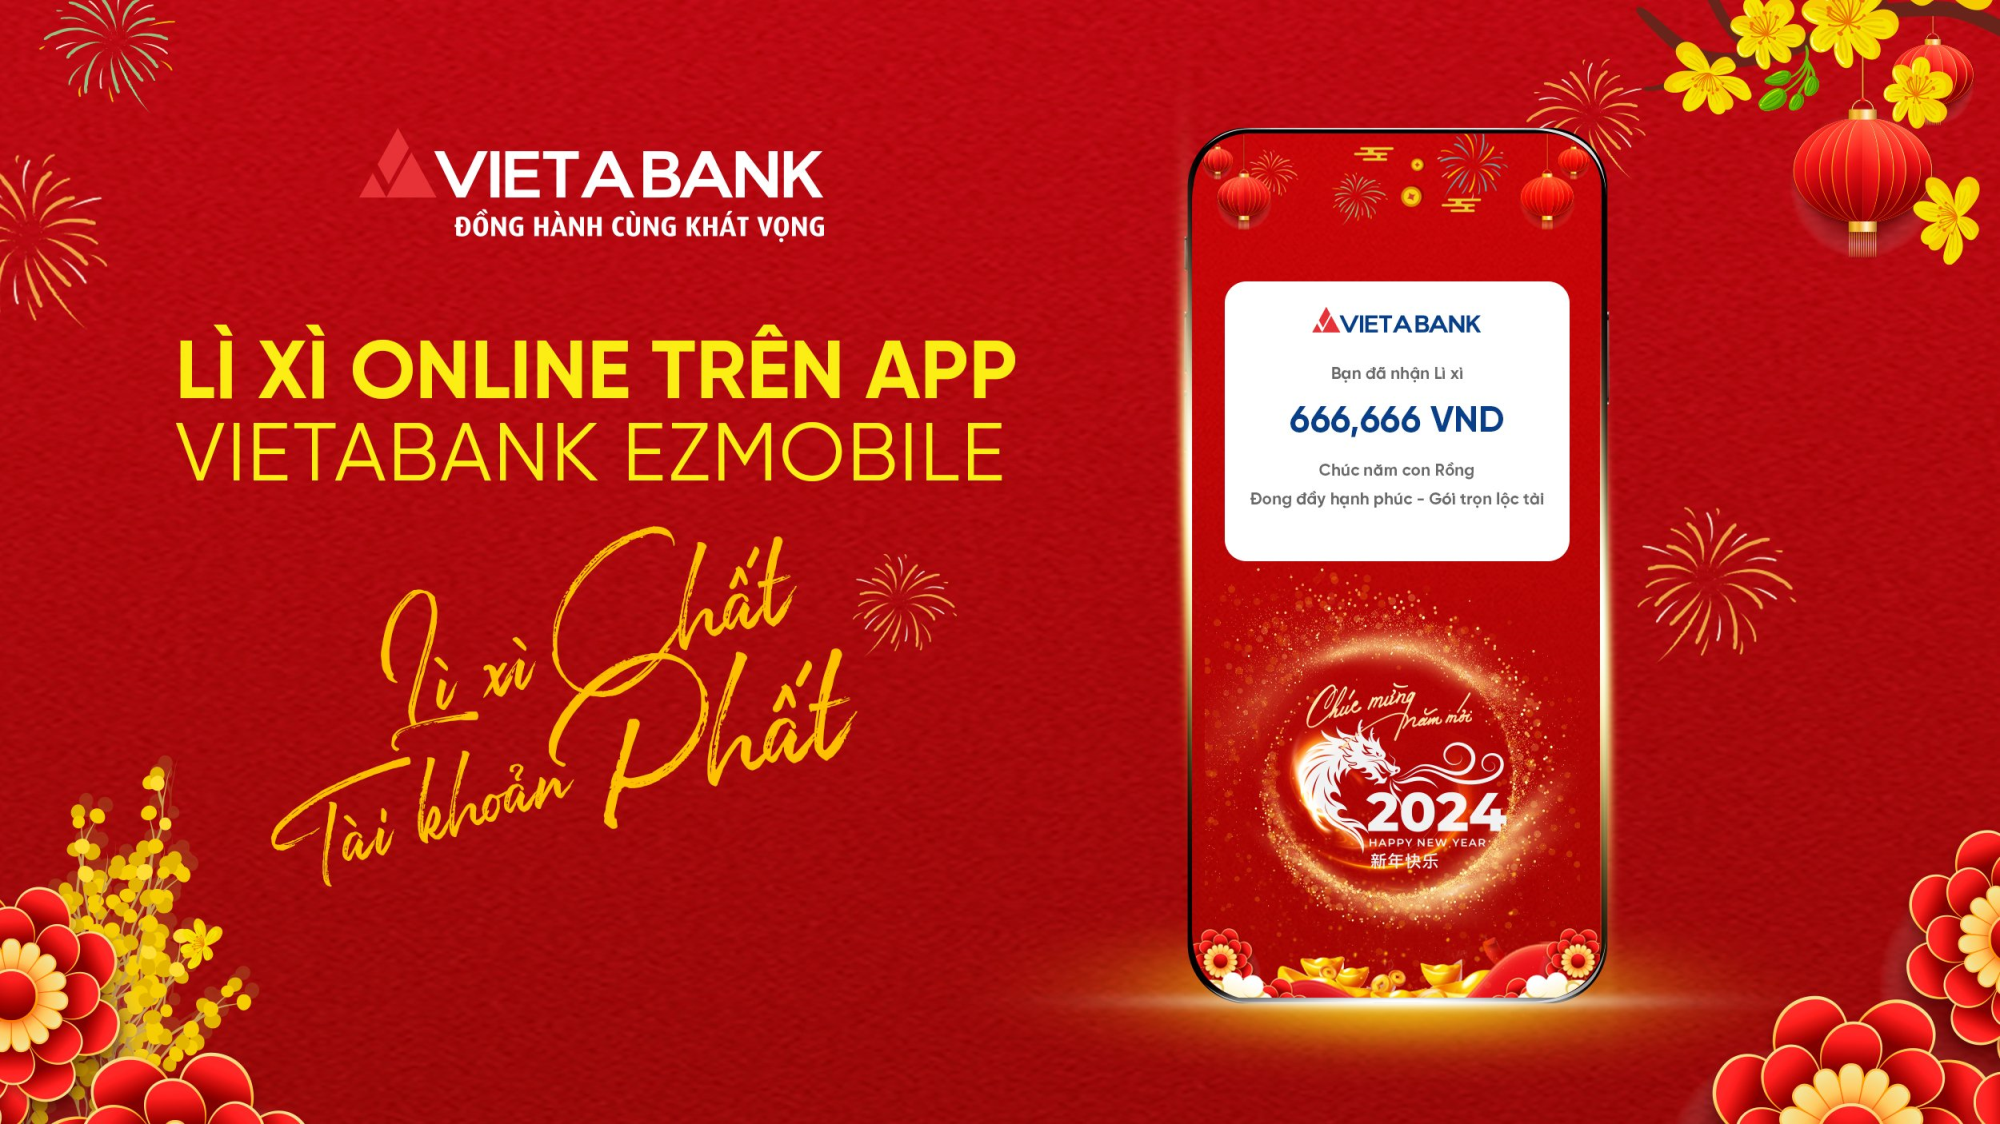 Cùng chào đón tính năng Lì xì Online trên app VietABank EzMOBILE 